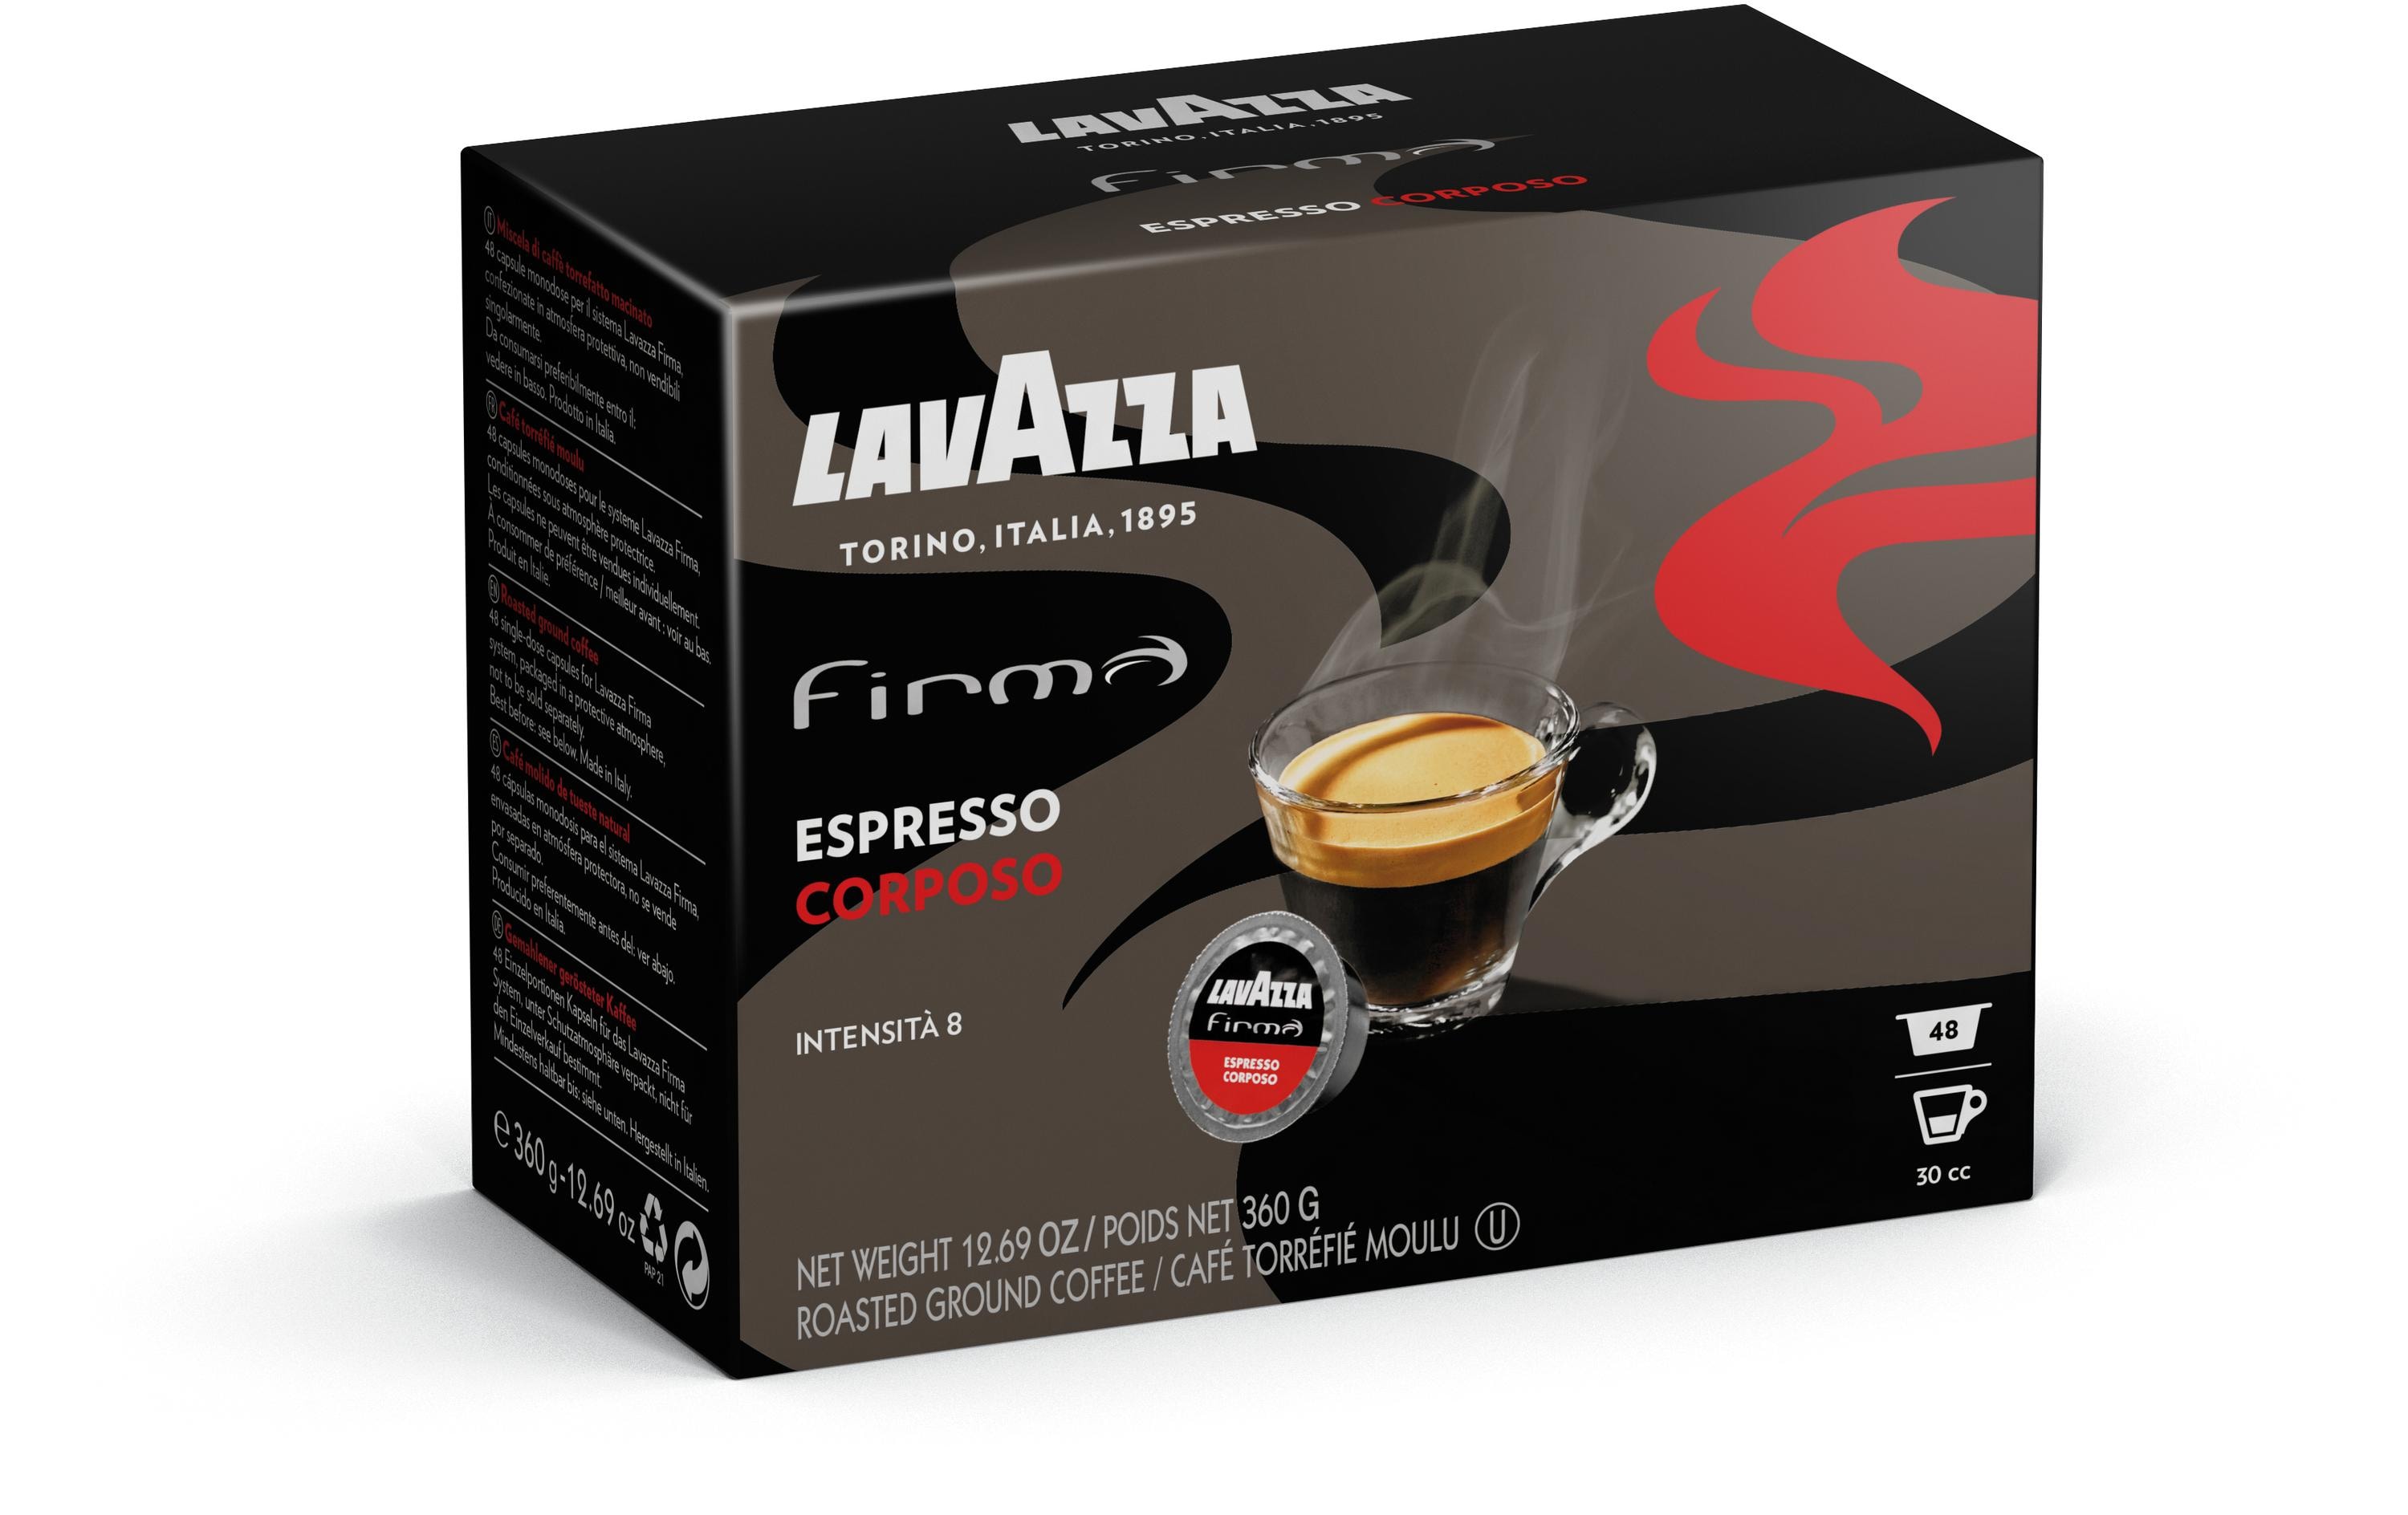 Lavazza Kaffeekapseln Firma Espresso Corposo 48 Stück